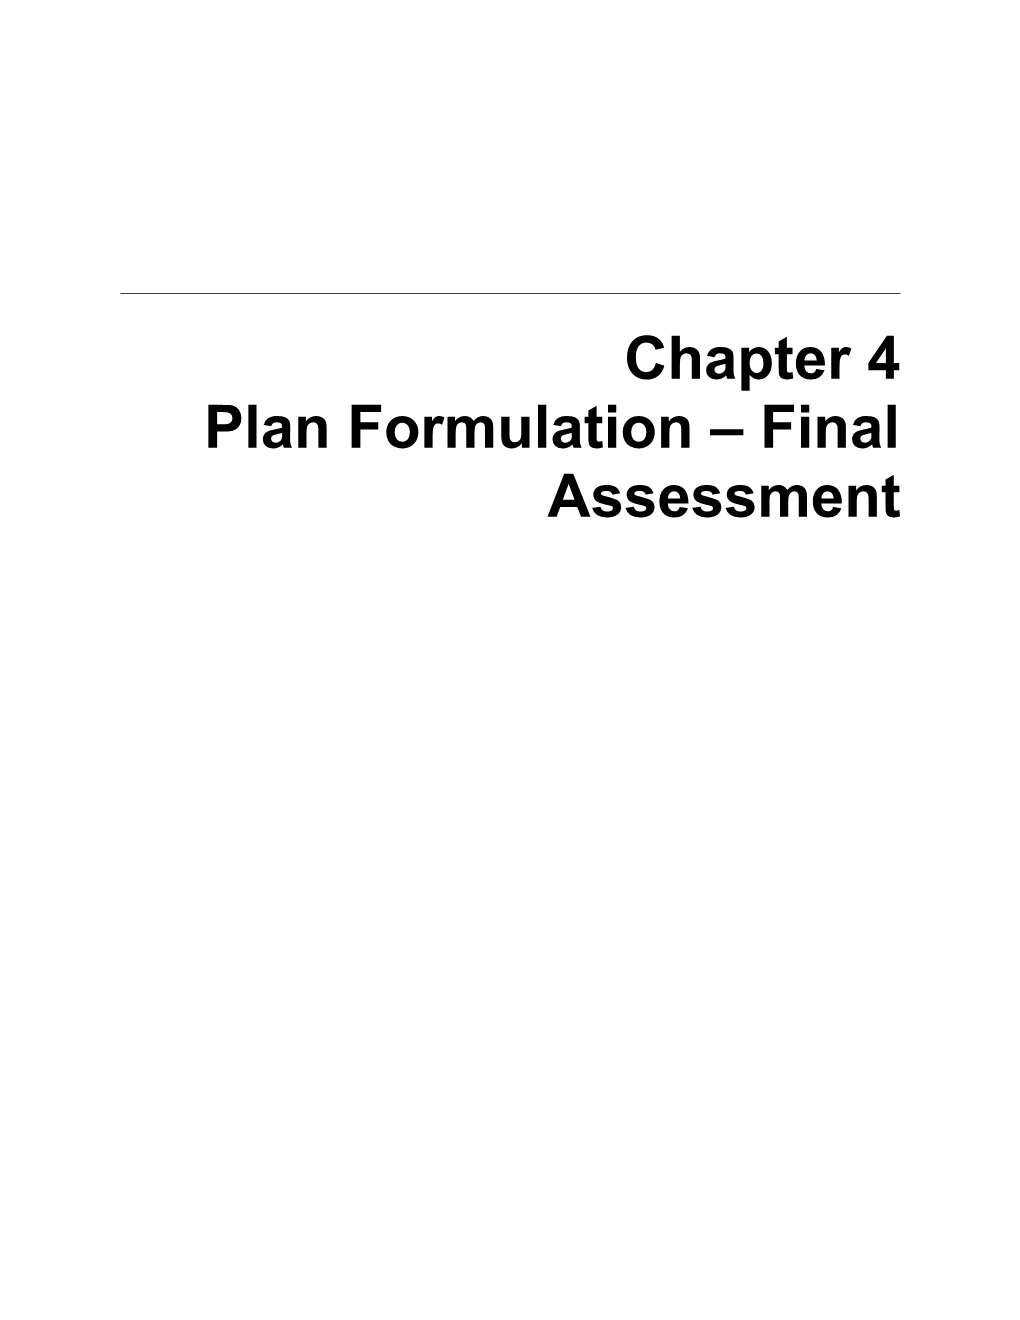 4.0. Plan Formulation Final Assessment